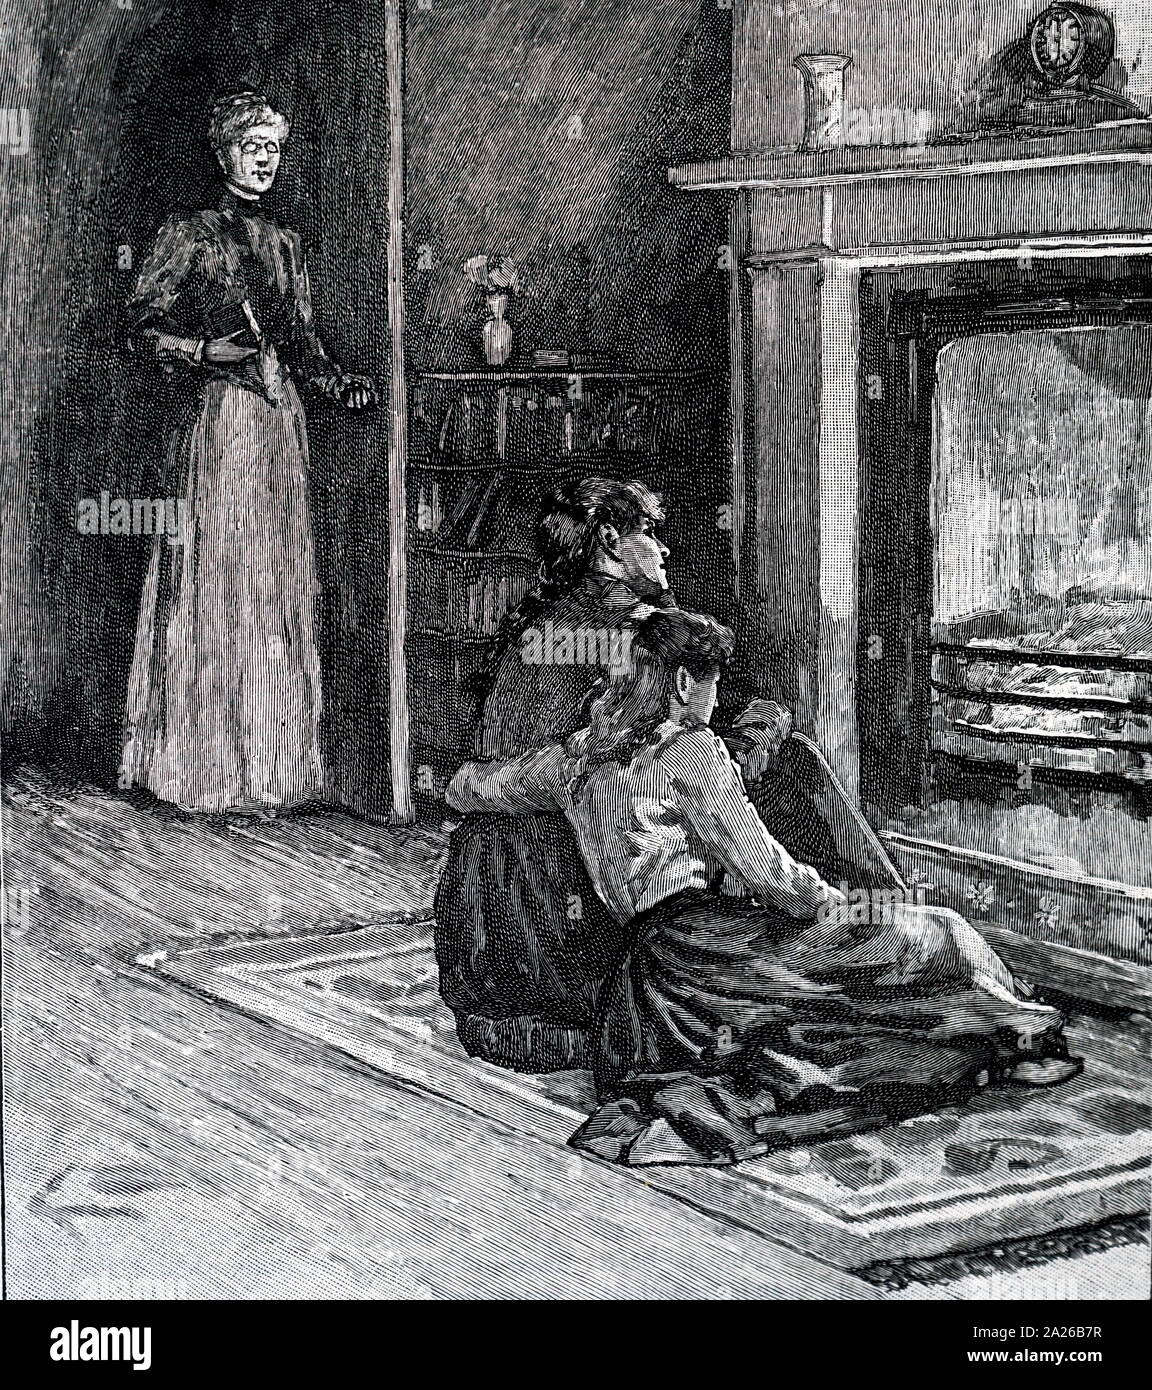 Feuer mit bras Kotflügel und Feuer Warenkorb öffnen. Abbildung veröffentlicht 1881 Stockfoto